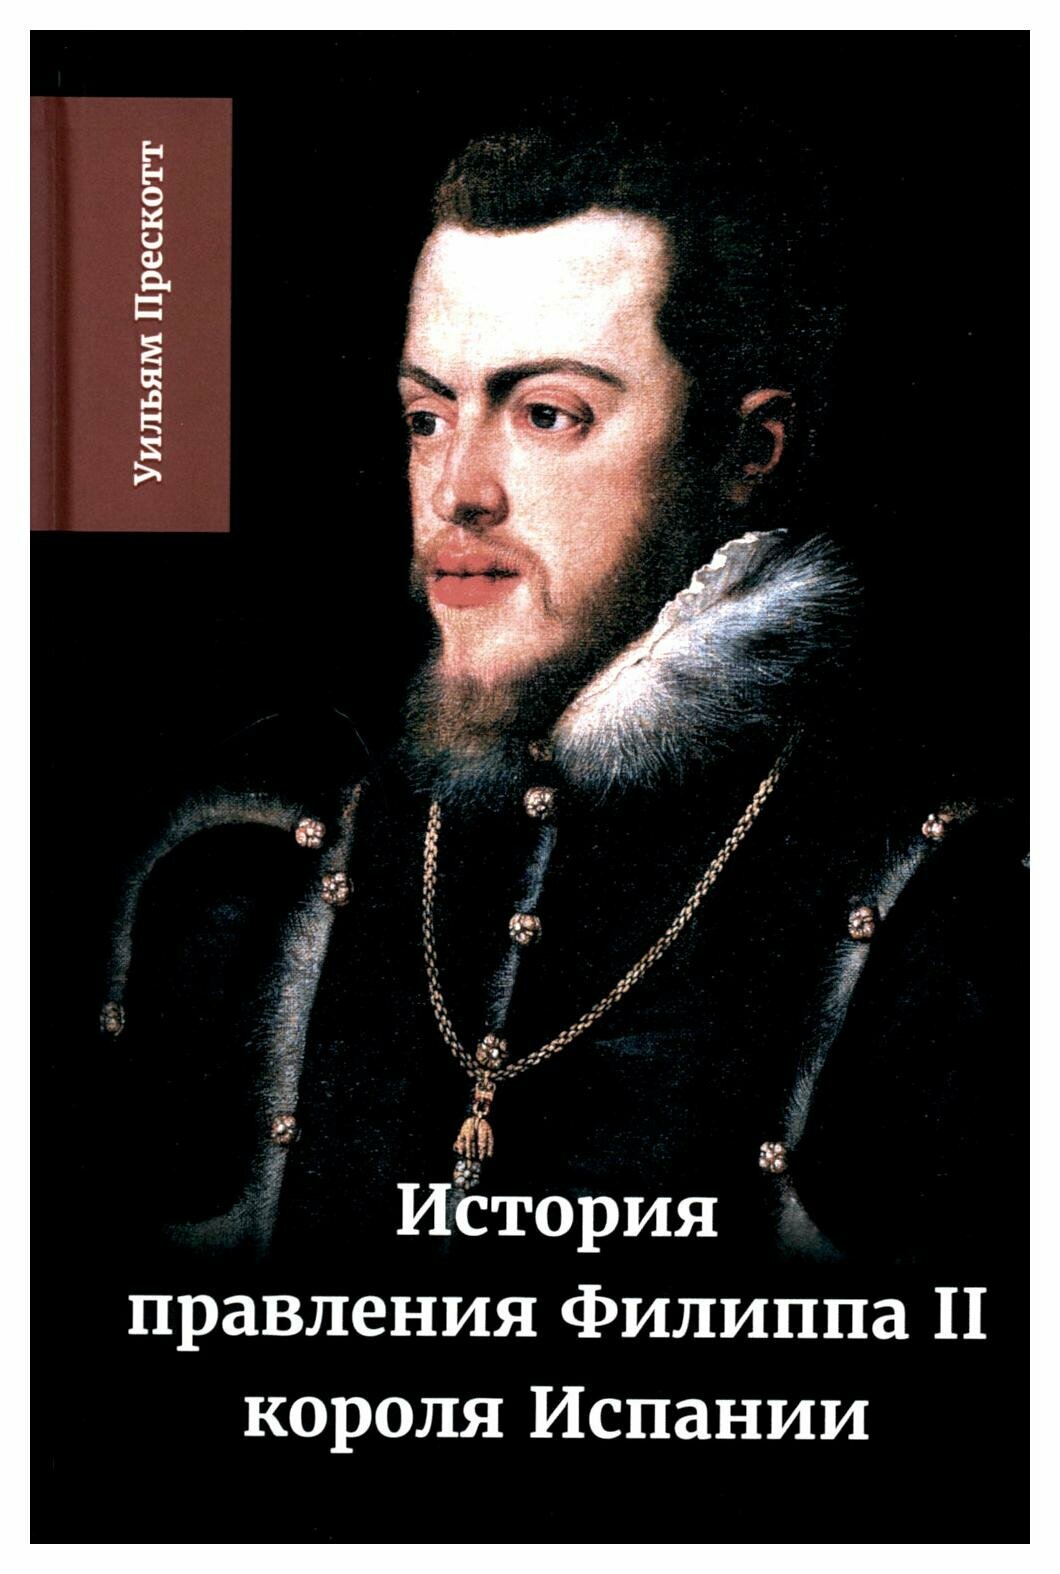 История правления Филиппа II, короля Испании. Часть 2 - фото №1